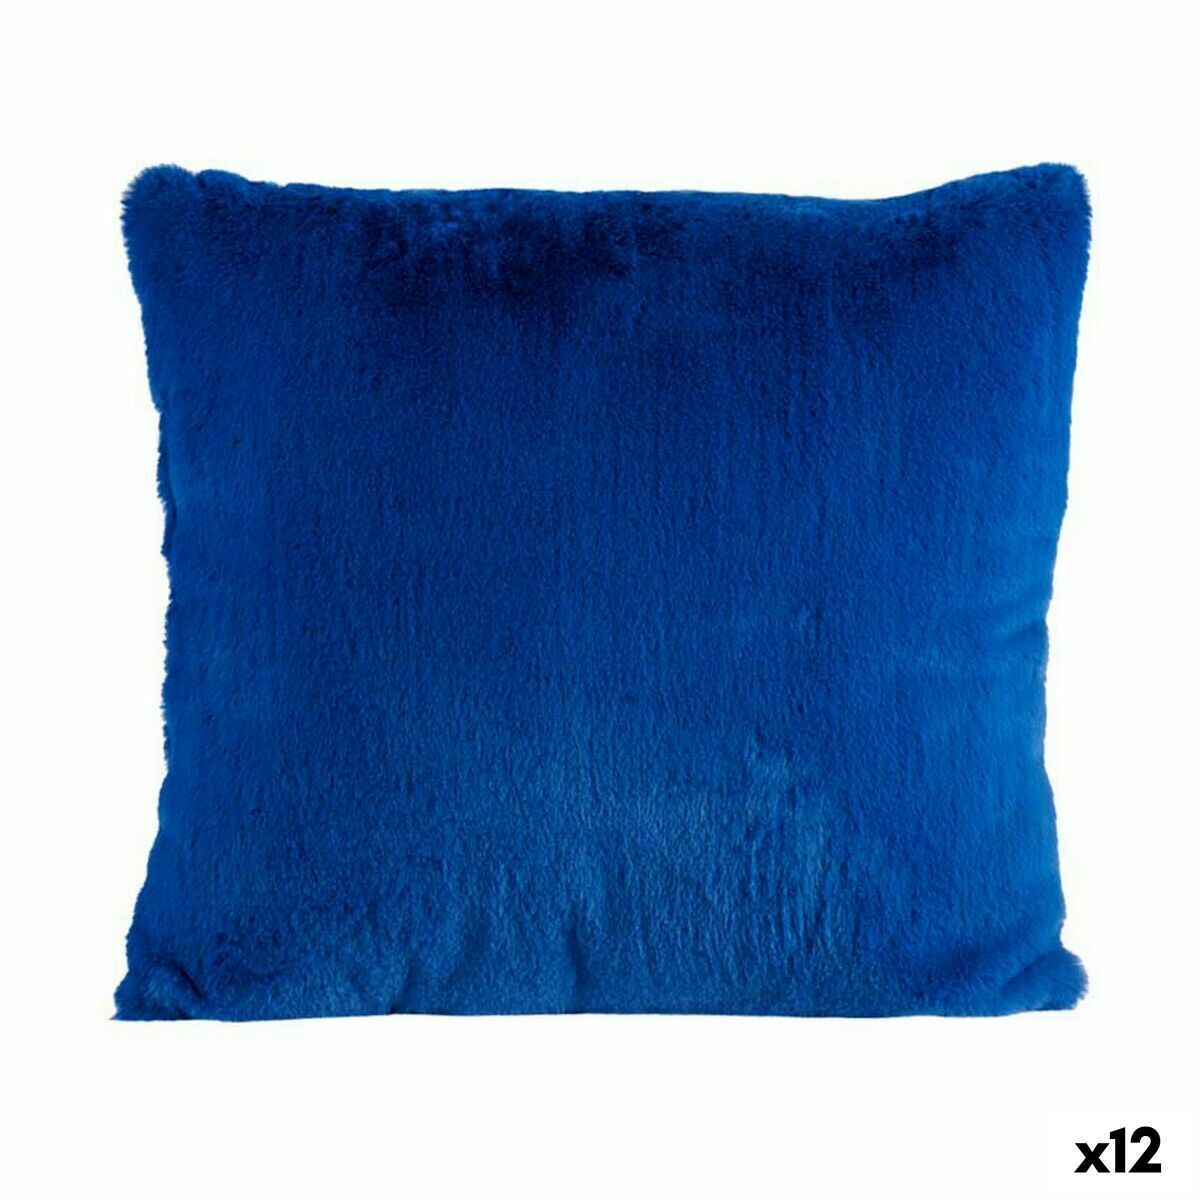 Cuscino blu 40 x 2 x 40 cm (12 unità)